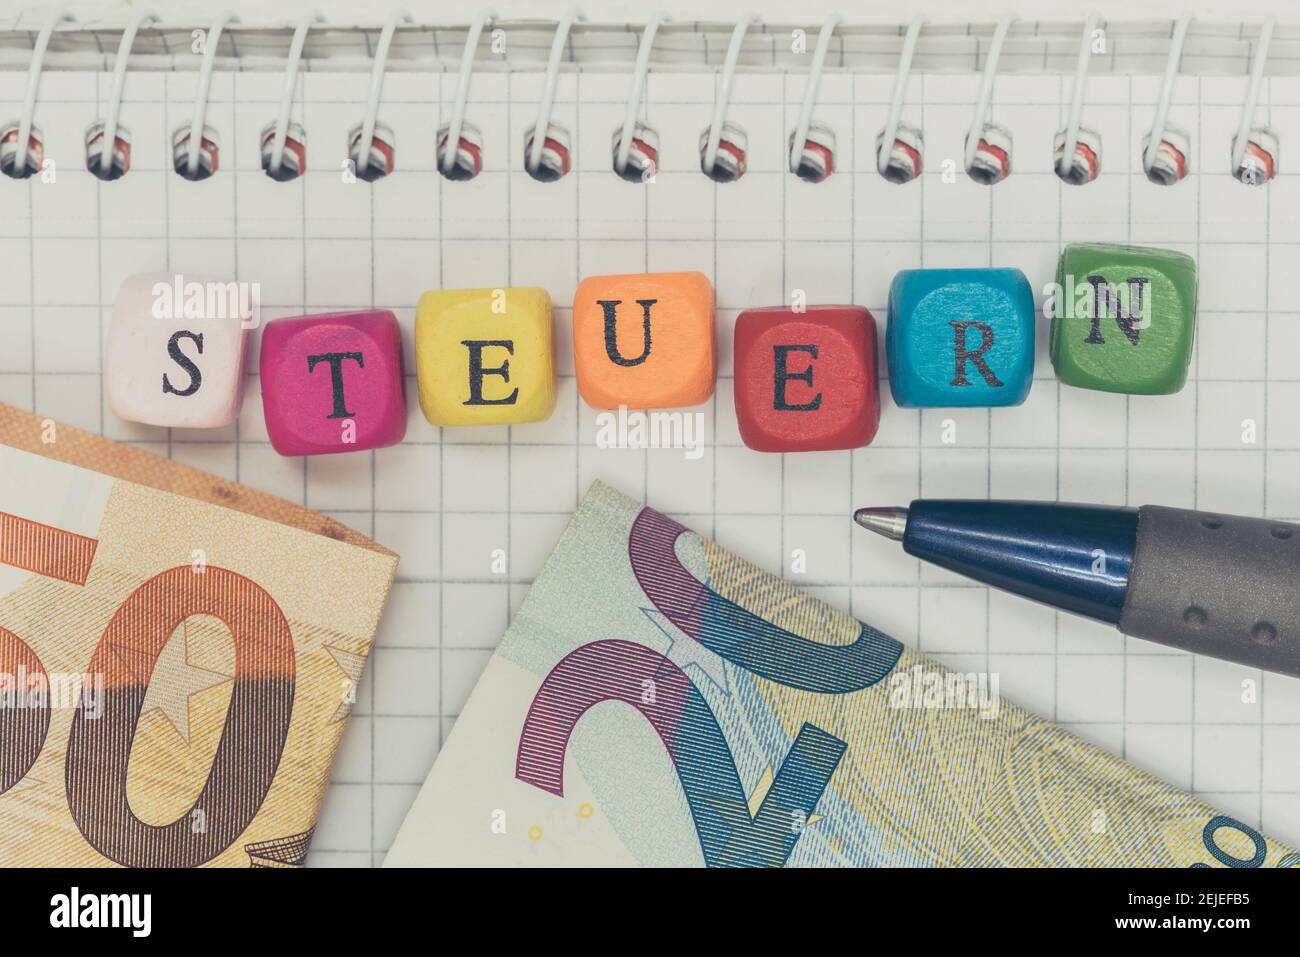 Concepto Steuern (en impuestos alemanes) con cubos de letras y billetes de banco. Foto de stock